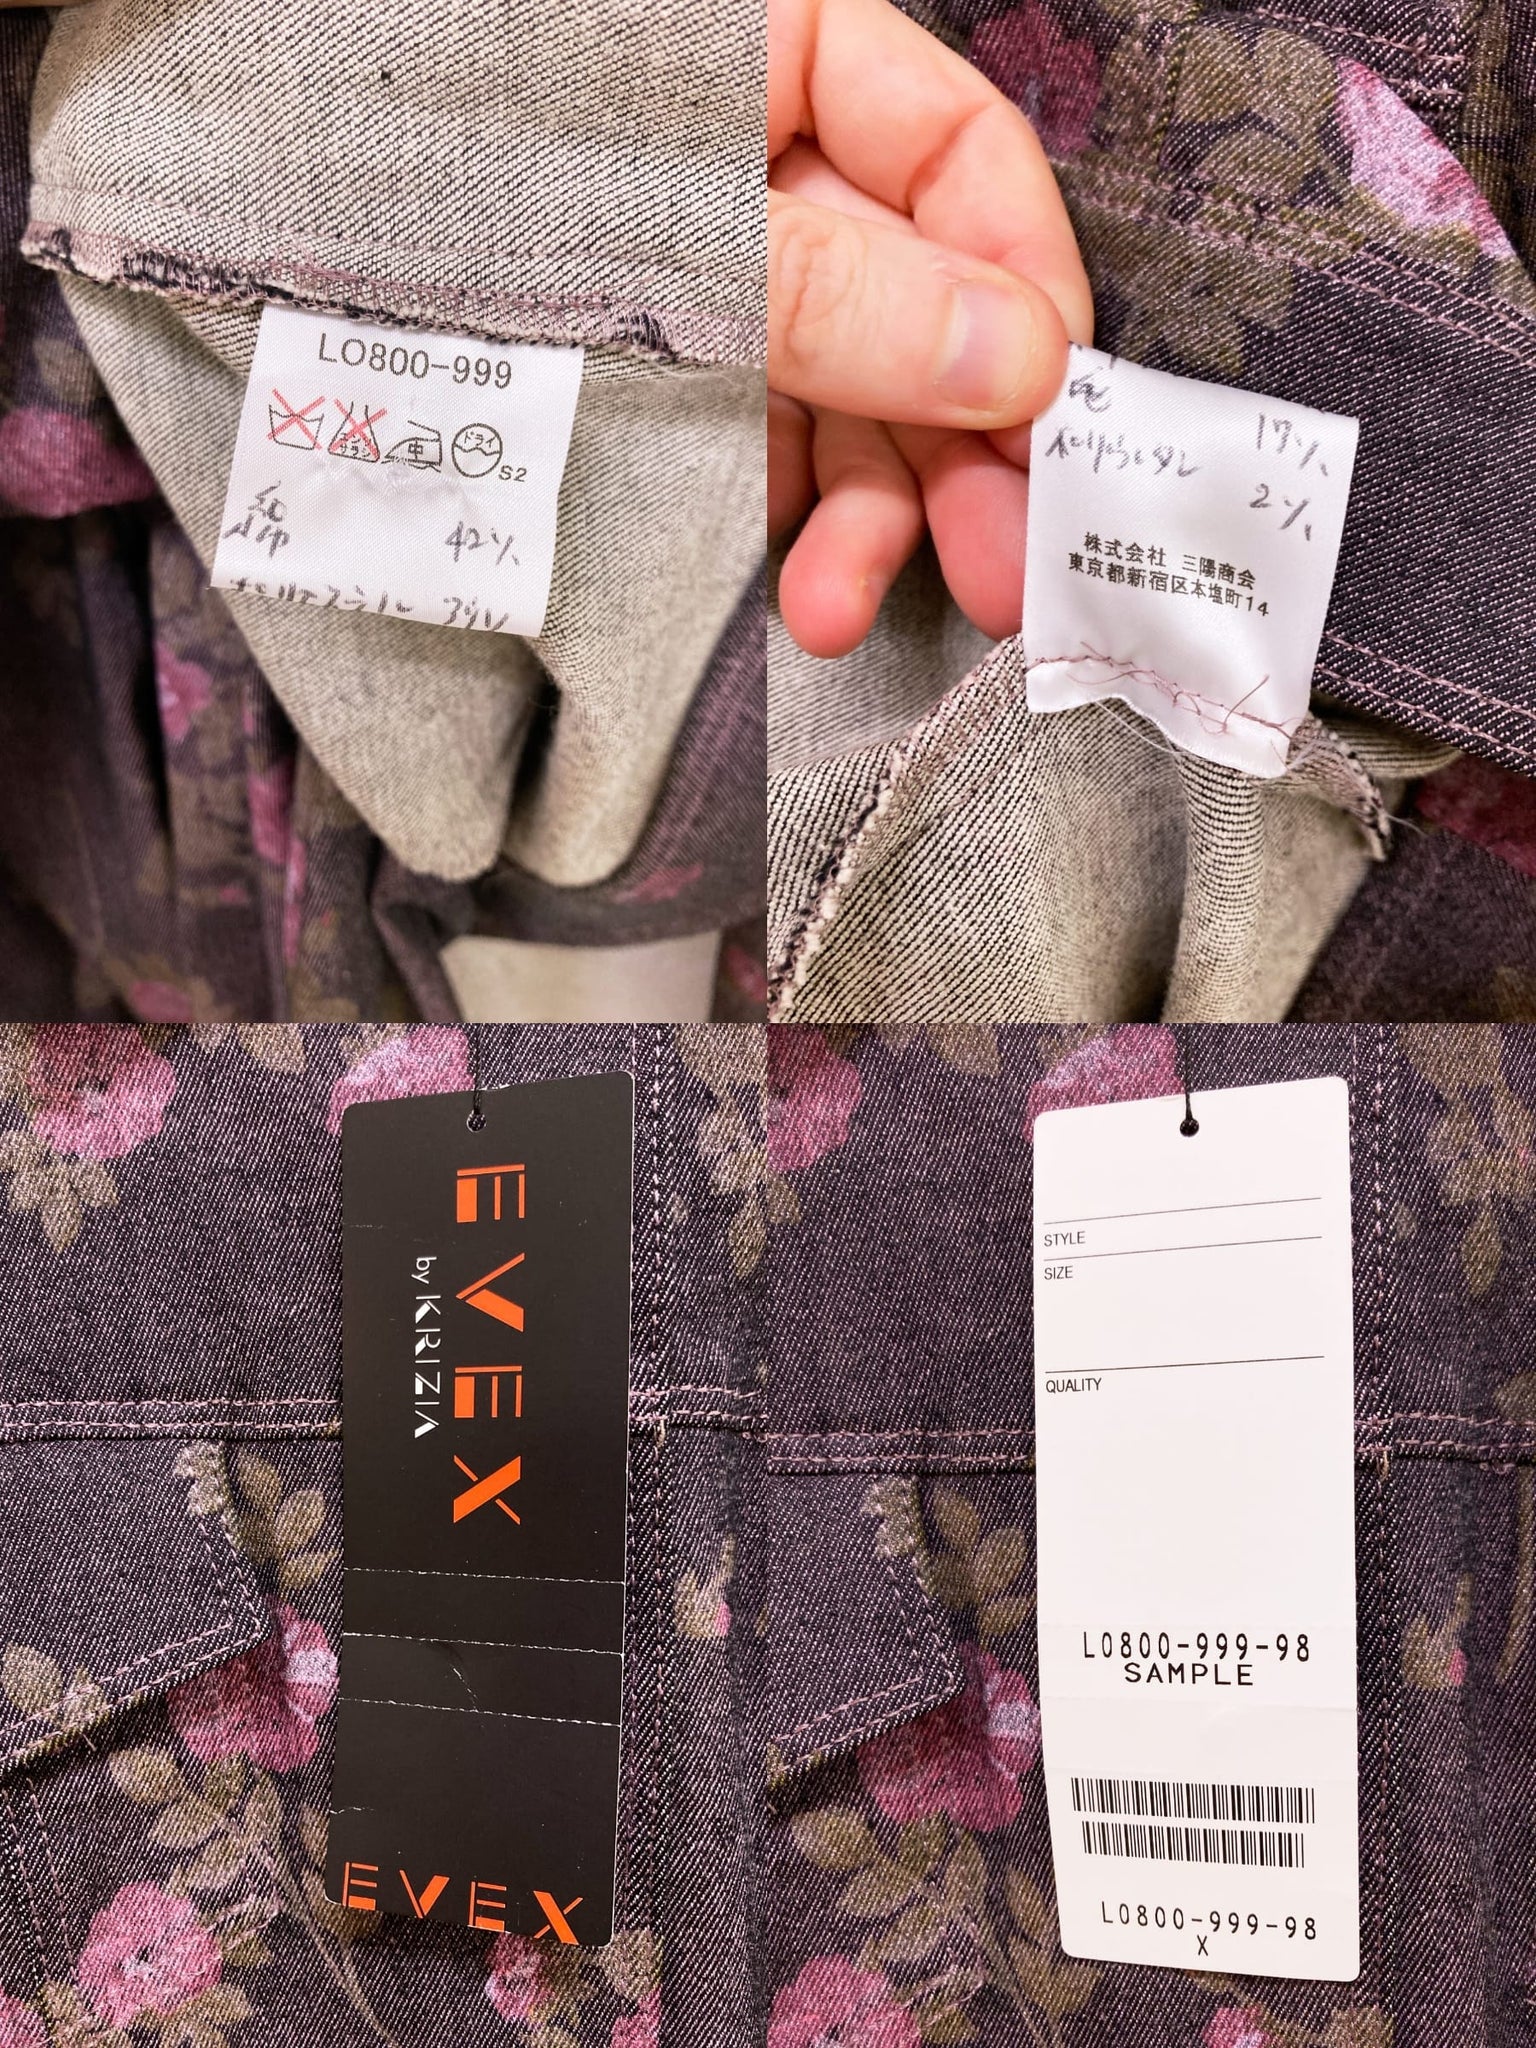 Evex by Krizia purple pink denim floral print trucker jacket jeans suit